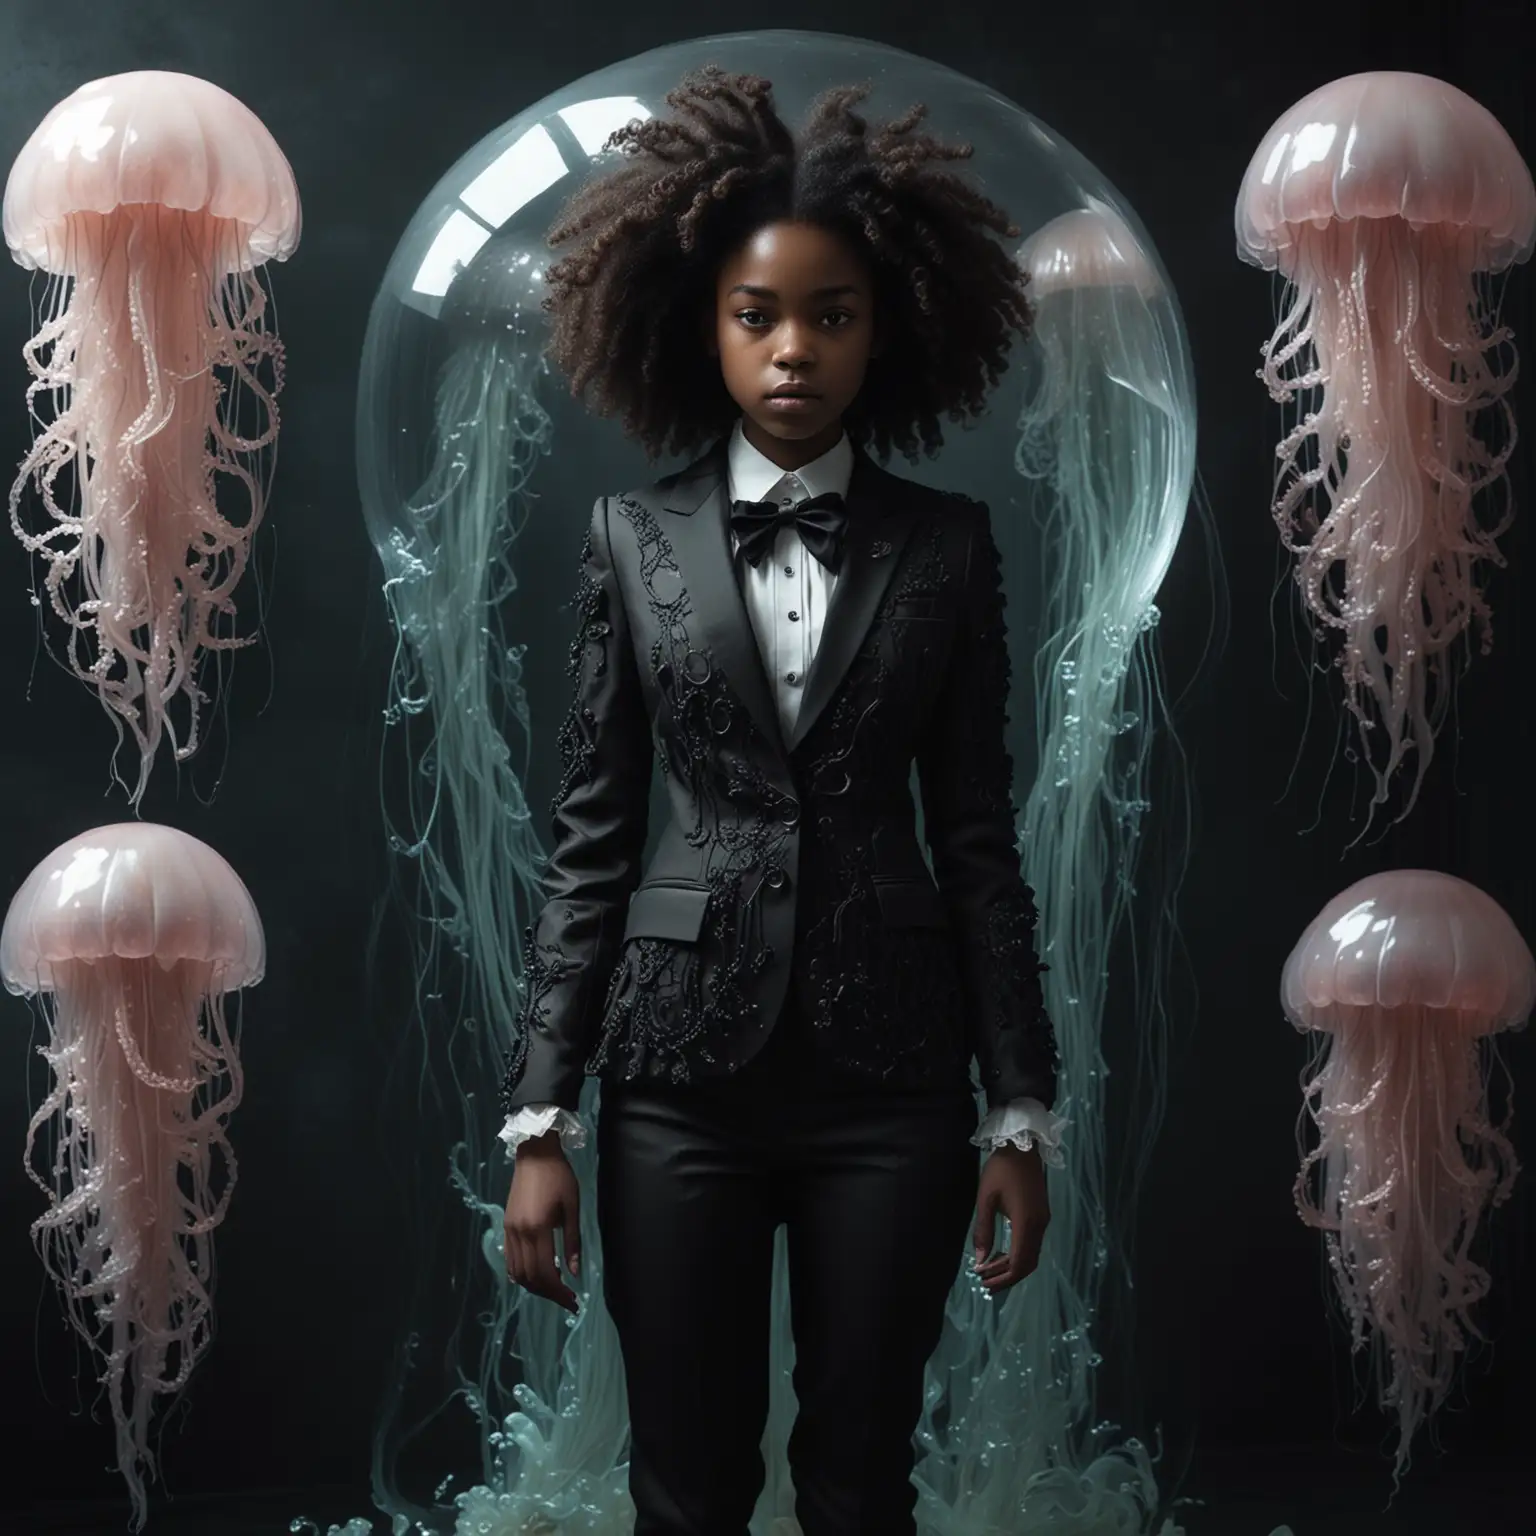 niña negra
 vestida con un traje hecho con medusas, una medusa gigante detras como mascota, estilo realista y rococo, oscuro, texturas, creepy
